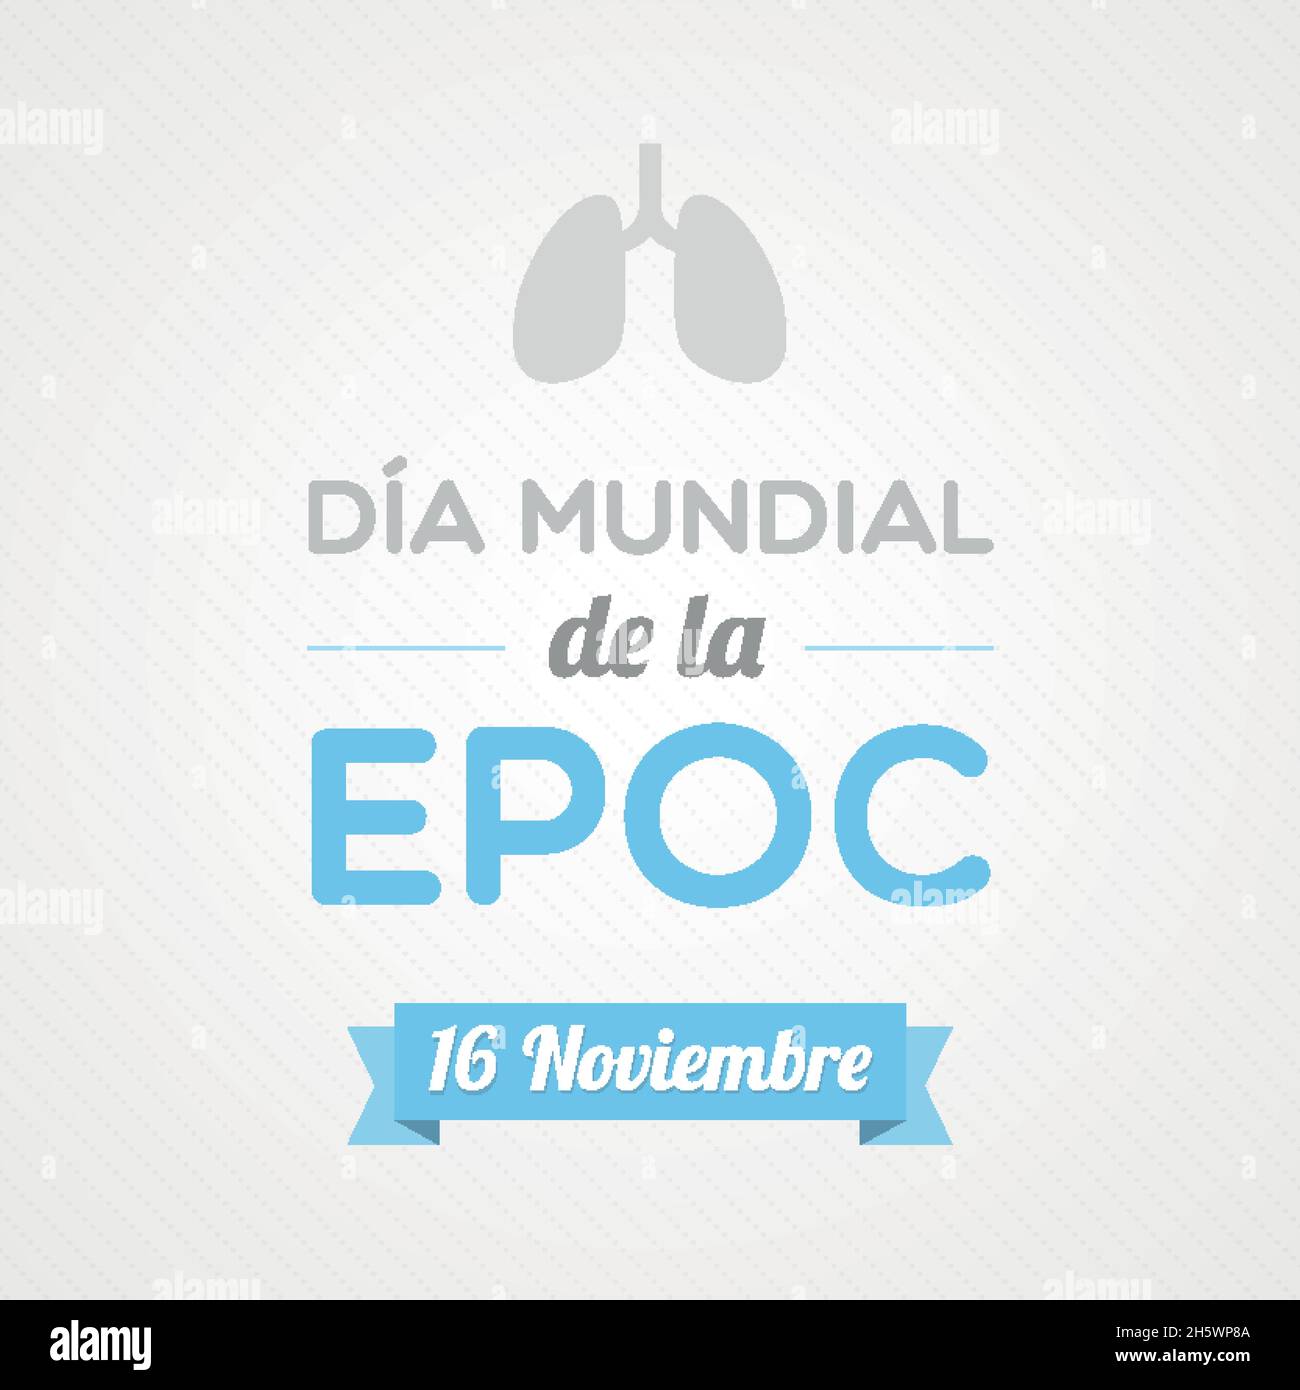 Welttag der chronischen obstruktiven Lungenerkrankung auf Spanisch. Dia Mundial de la EPOC. Vektorgrafik, flaches Design Stock Vektor